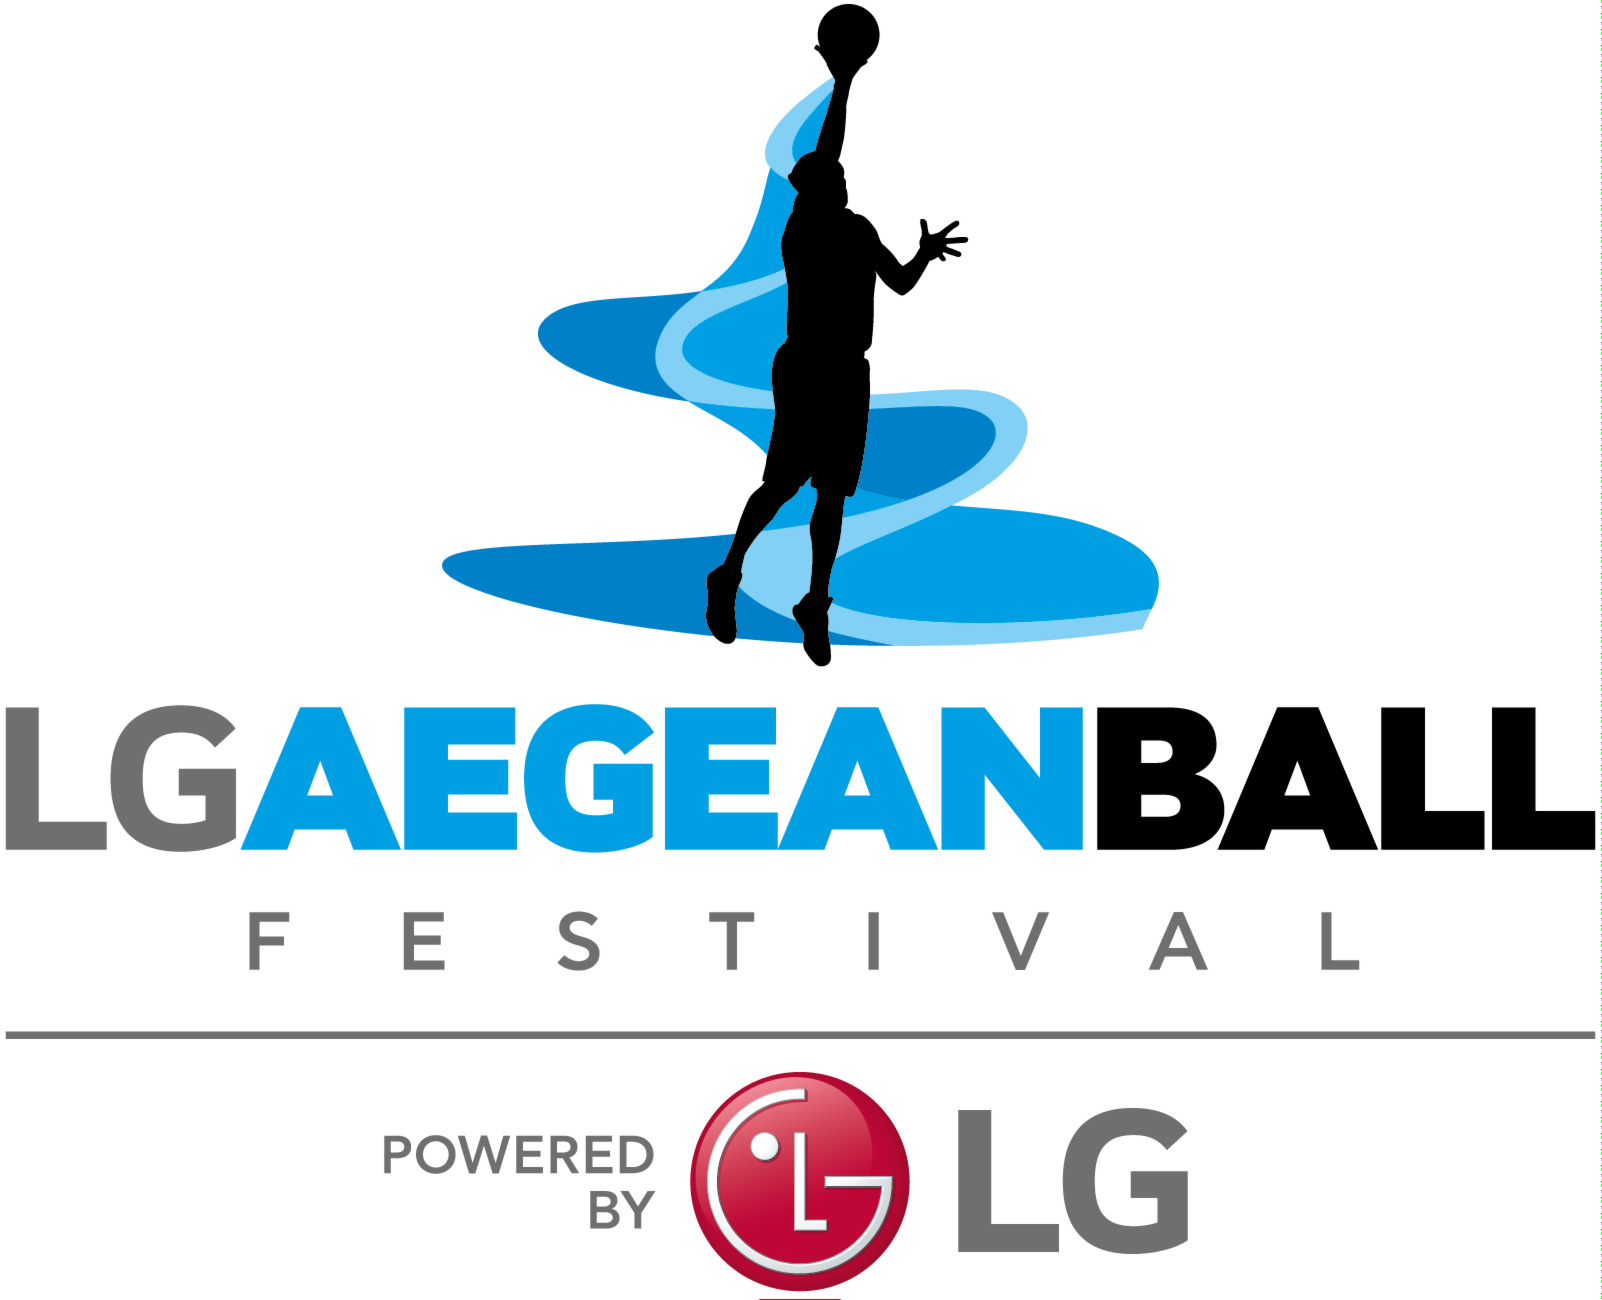 LG ΑegeanBall Festival logo